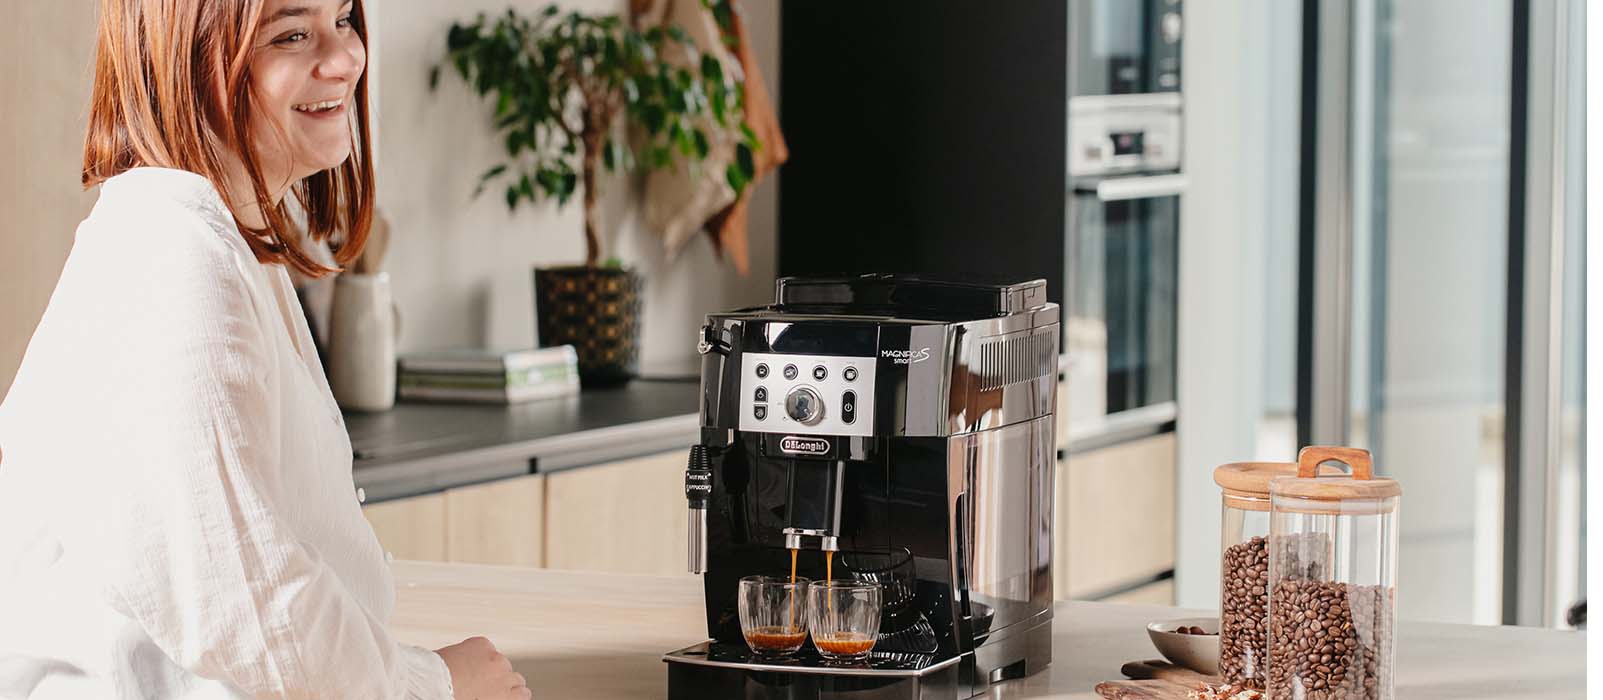 Promo spéciale Delonghi sur sa machine à café iconique avant le week-end